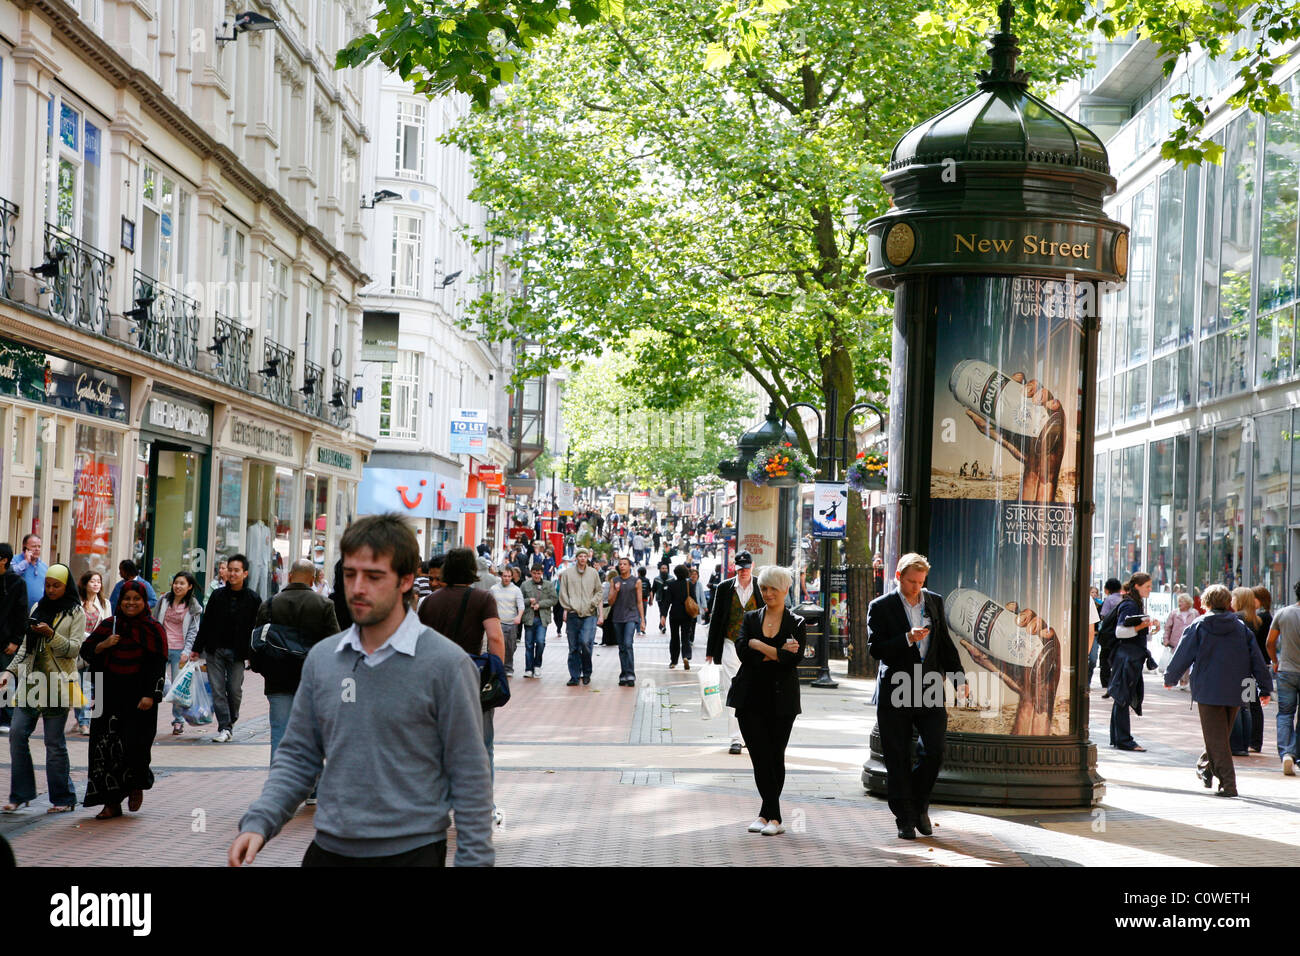 Les gens marcher dans New Street, une rue piétonne avec de nombreux magasins. Birmingham, Angleterre, RU. Banque D'Images